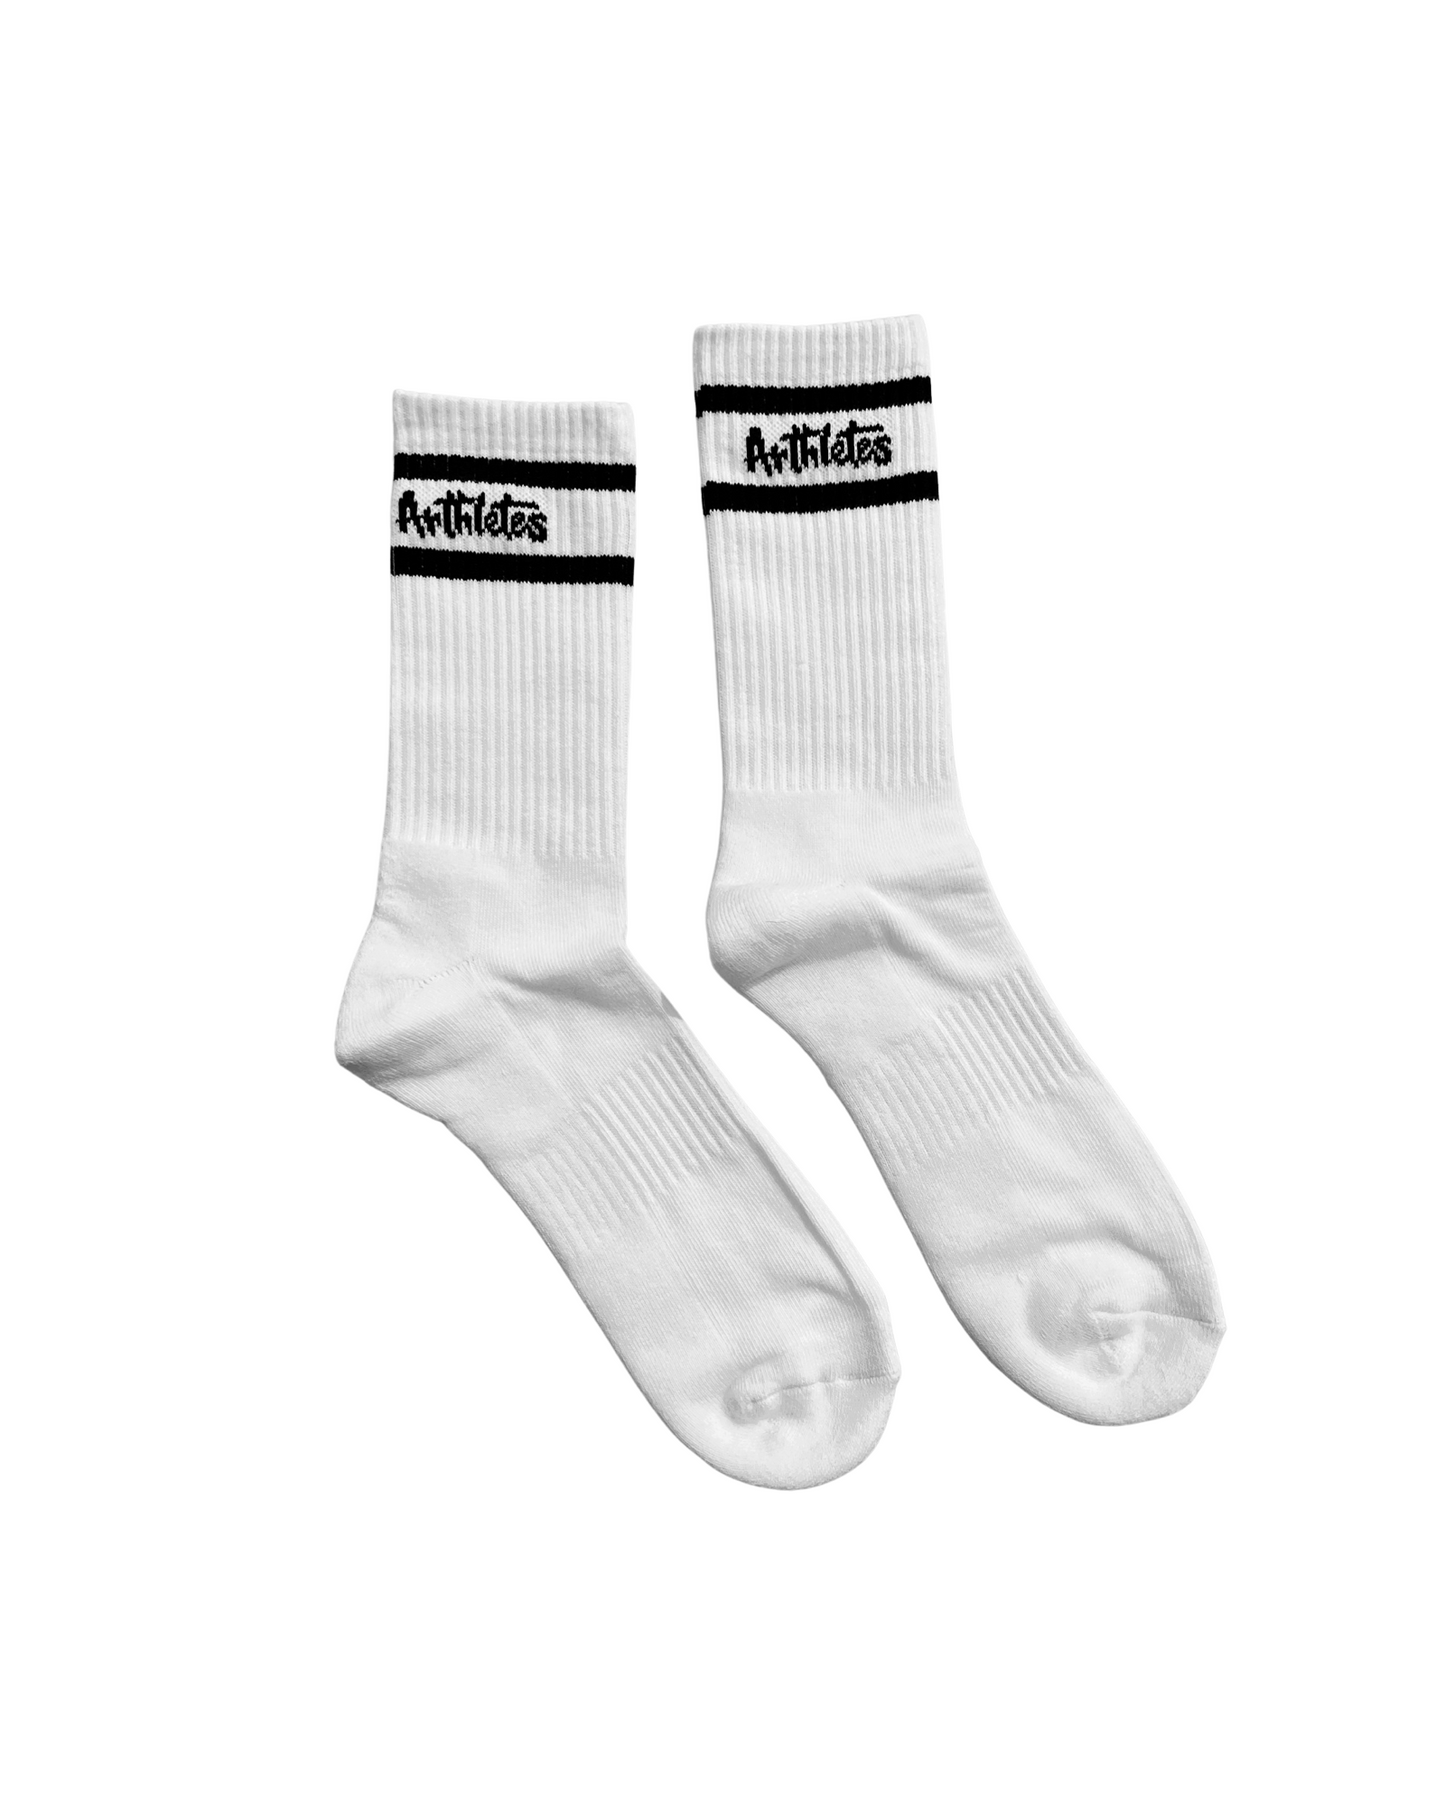 Arthletes White Socks